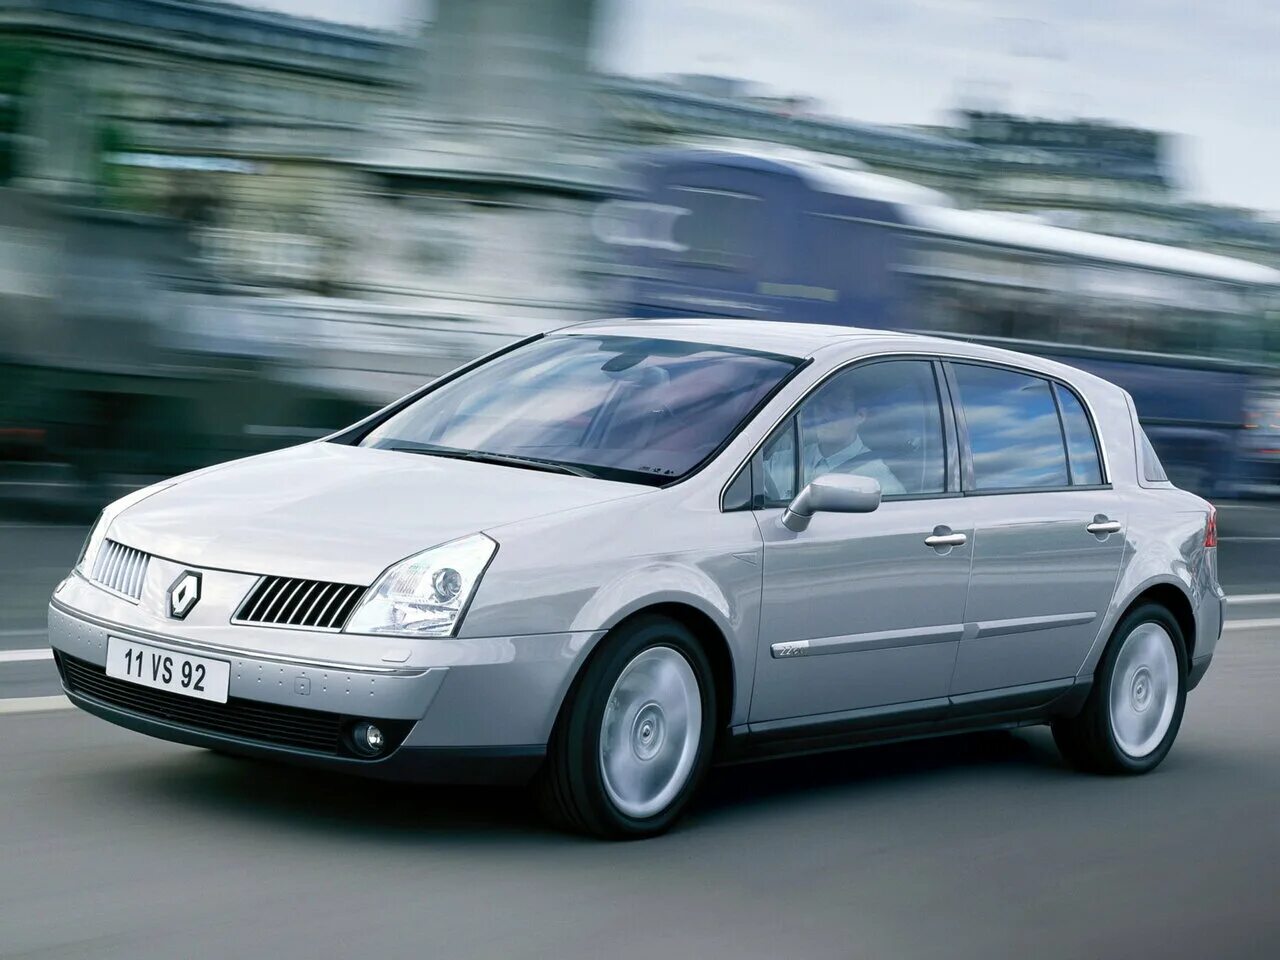 Renault vel. Renault vel satis. Renault vel satis 2003. Reno Velsatis 3.5. Renault vel satis характеристики.